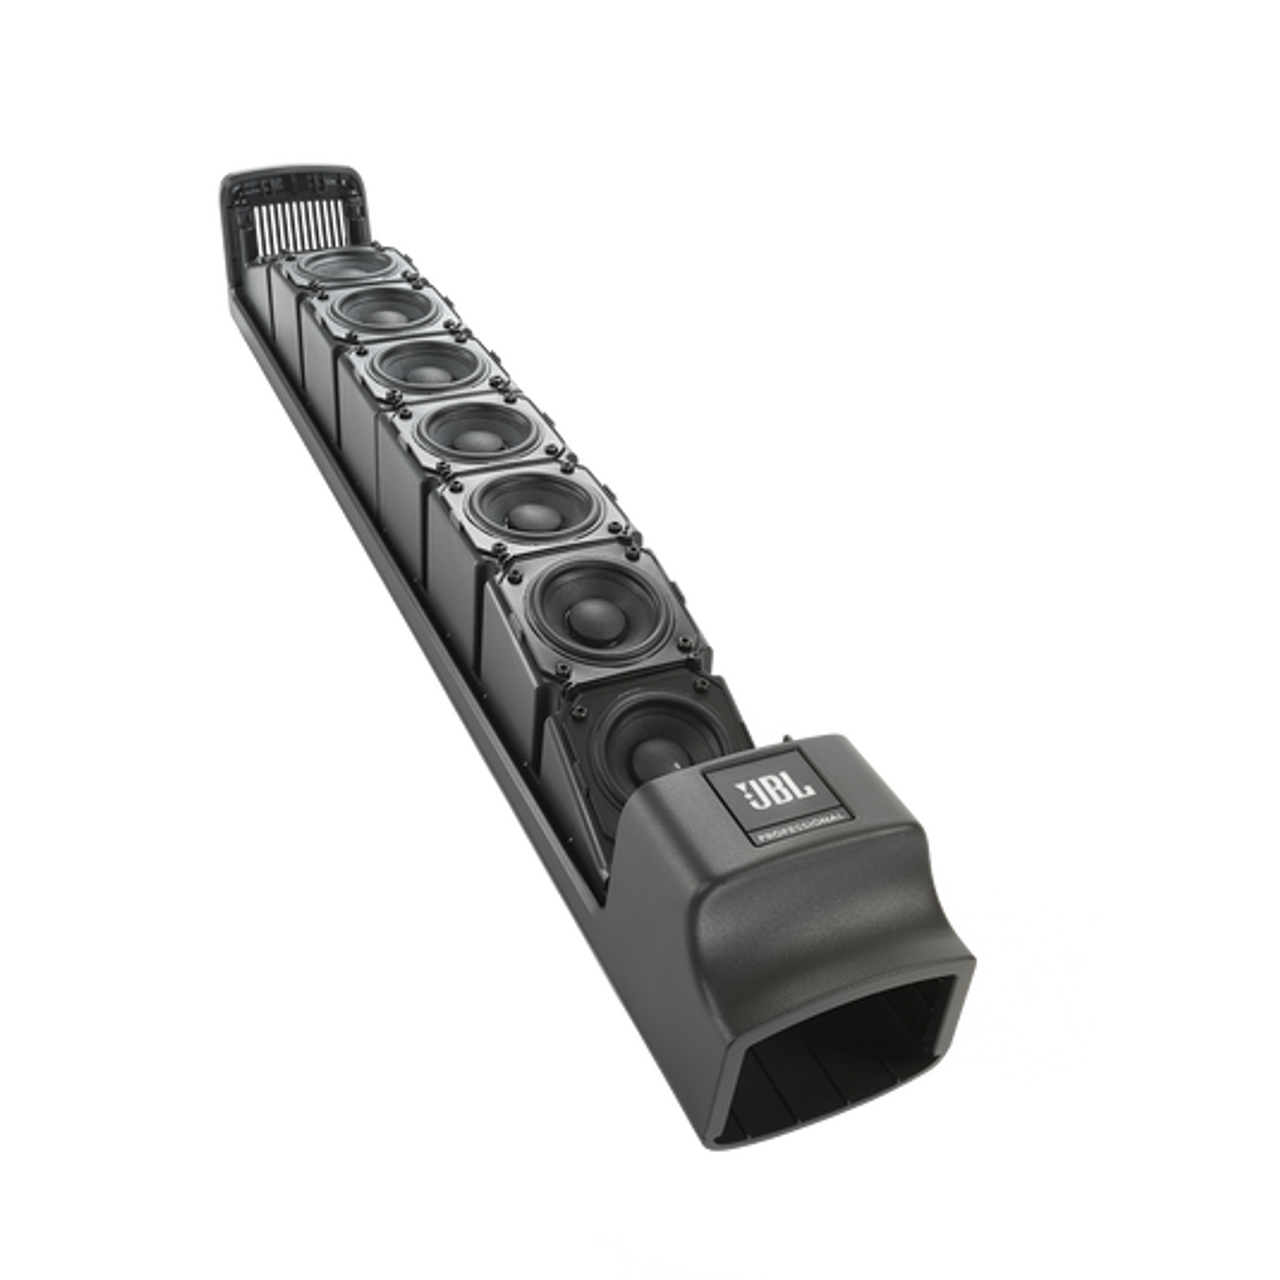 JBL JBL-EONONEMK2-NA Battery Powered Column Speaker